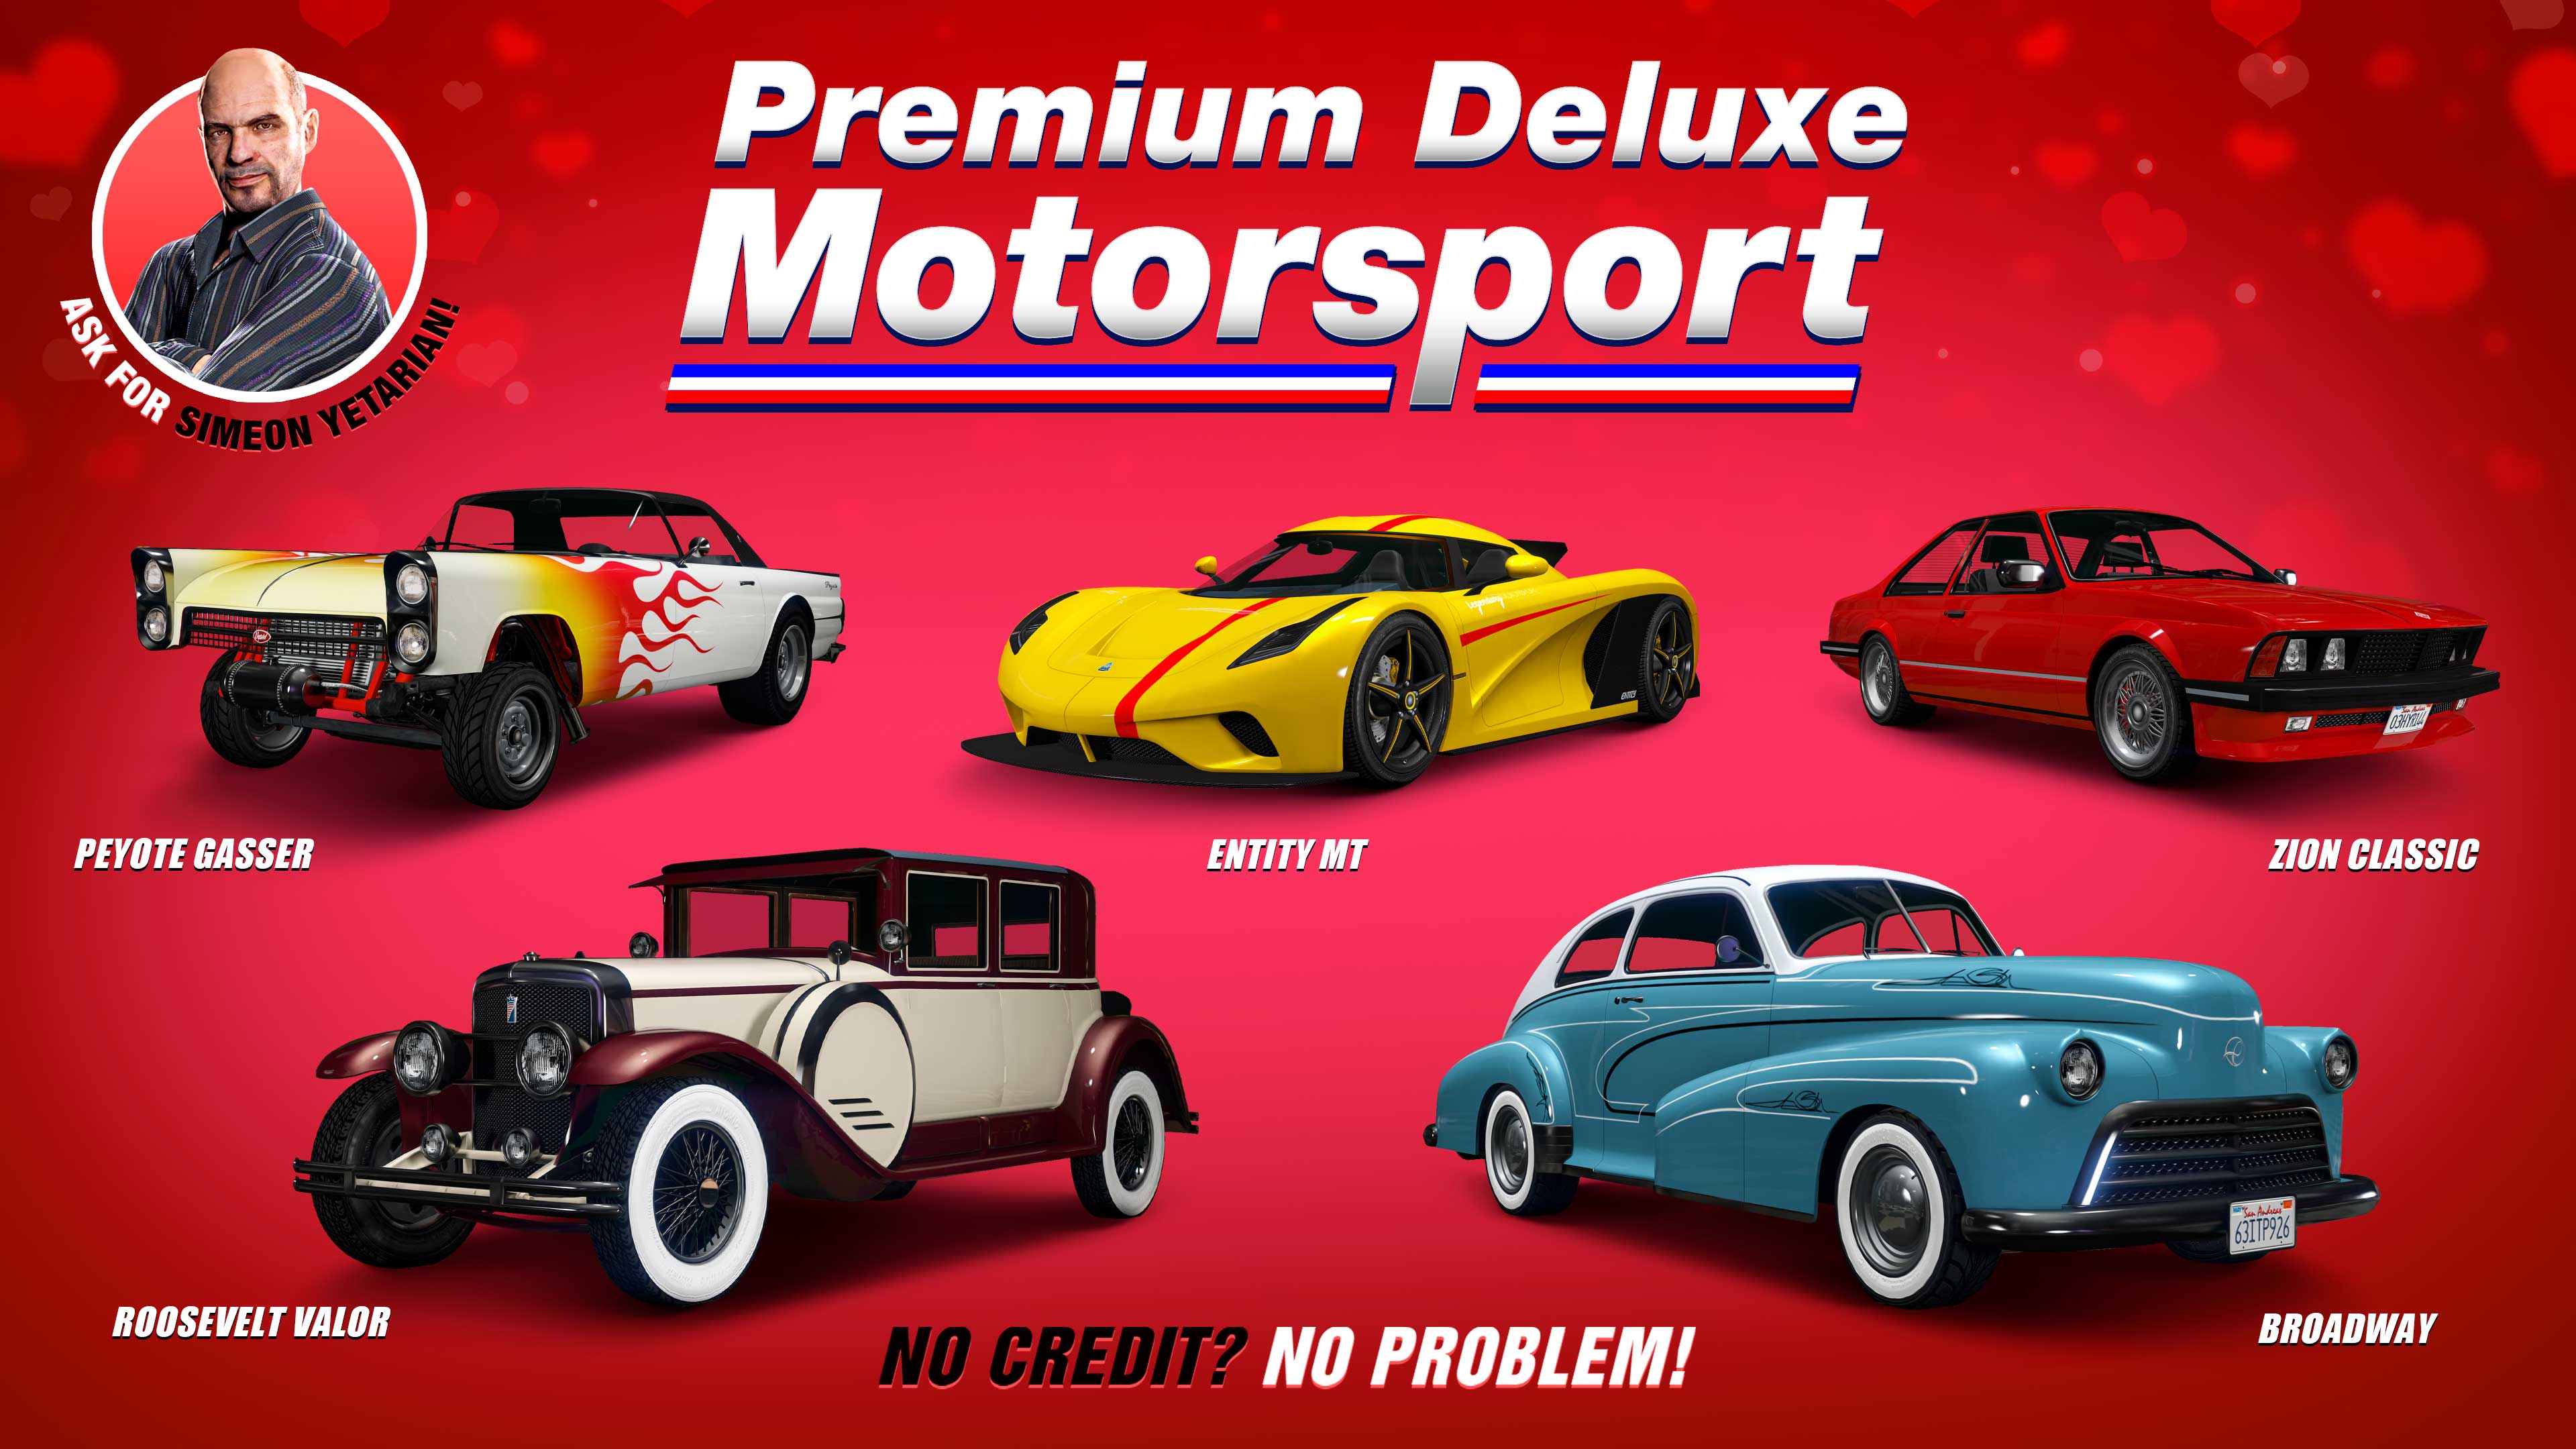 Pôster da concessionária Premium Deluxe Motorsport